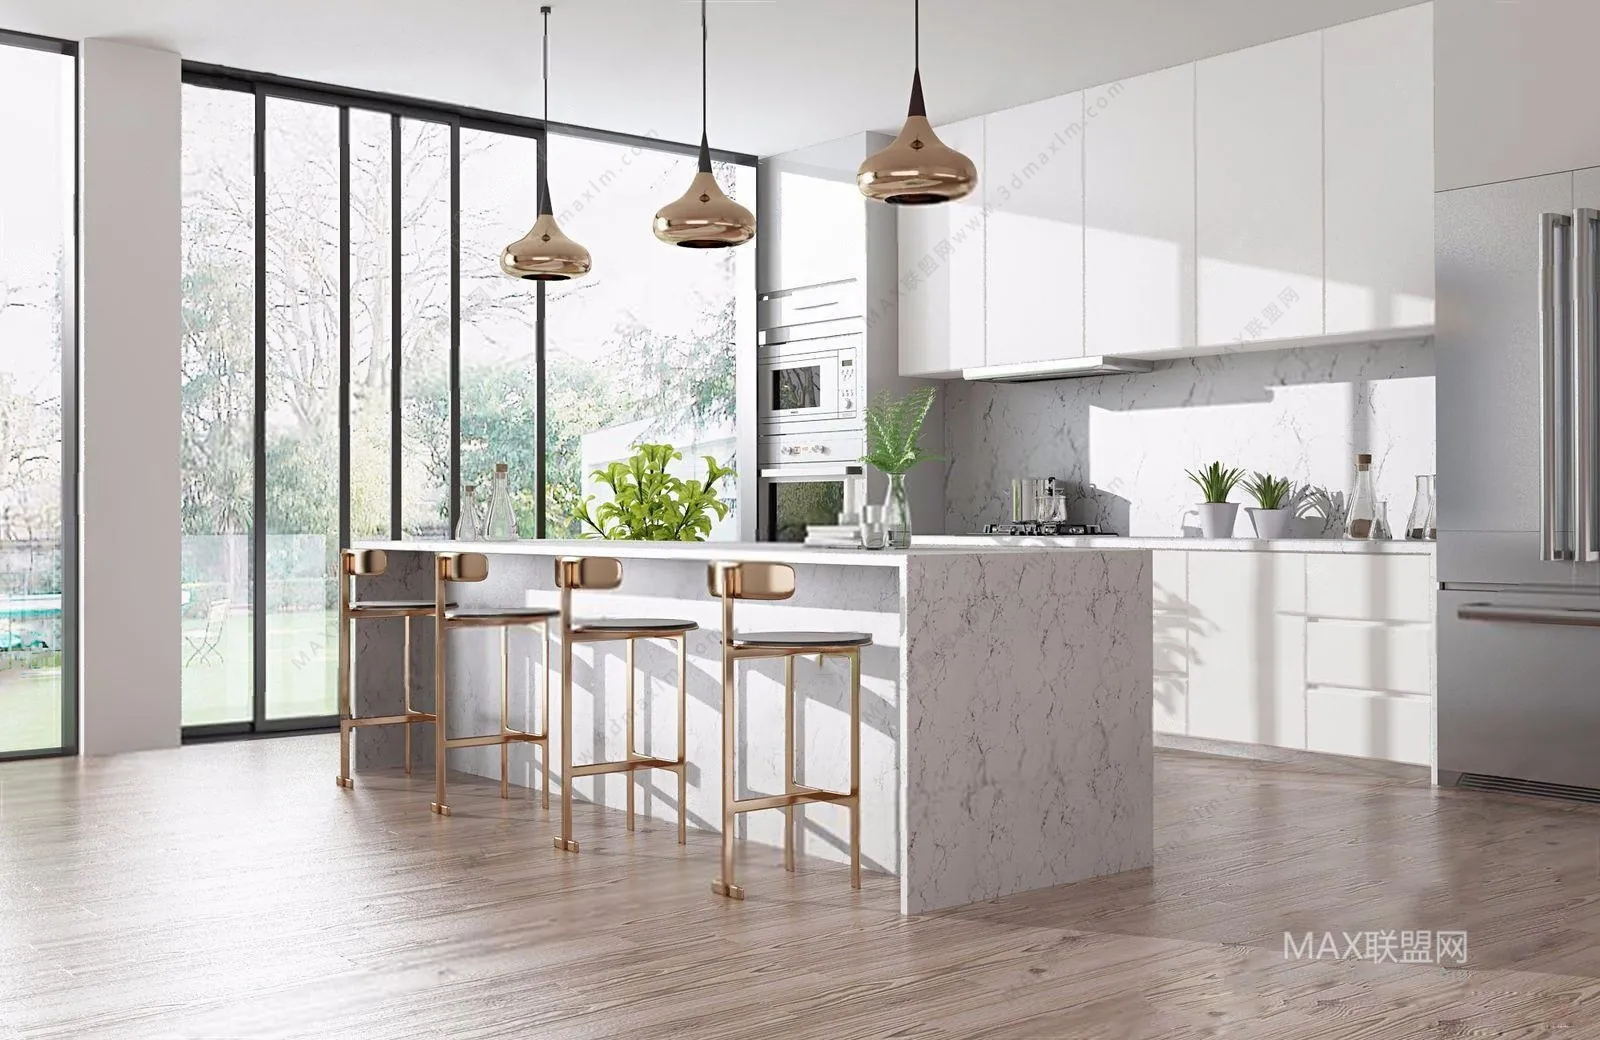 Kitchen – Interior Design – Modern Design – 031